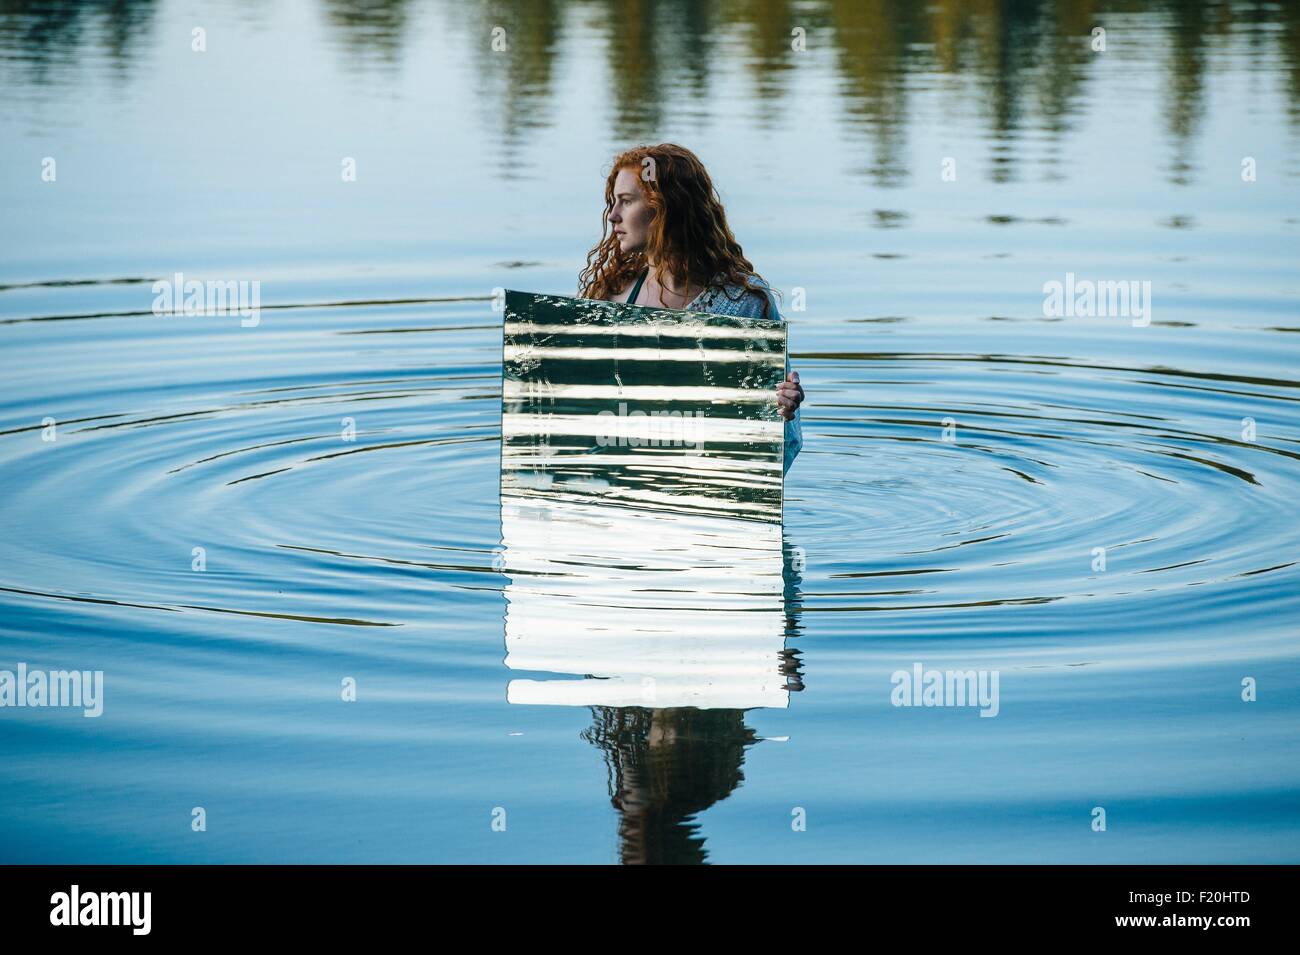 Junge Frau im See, Holding-Spiegel, Wasser plätschert in Spiegel reflektieren Stockfoto